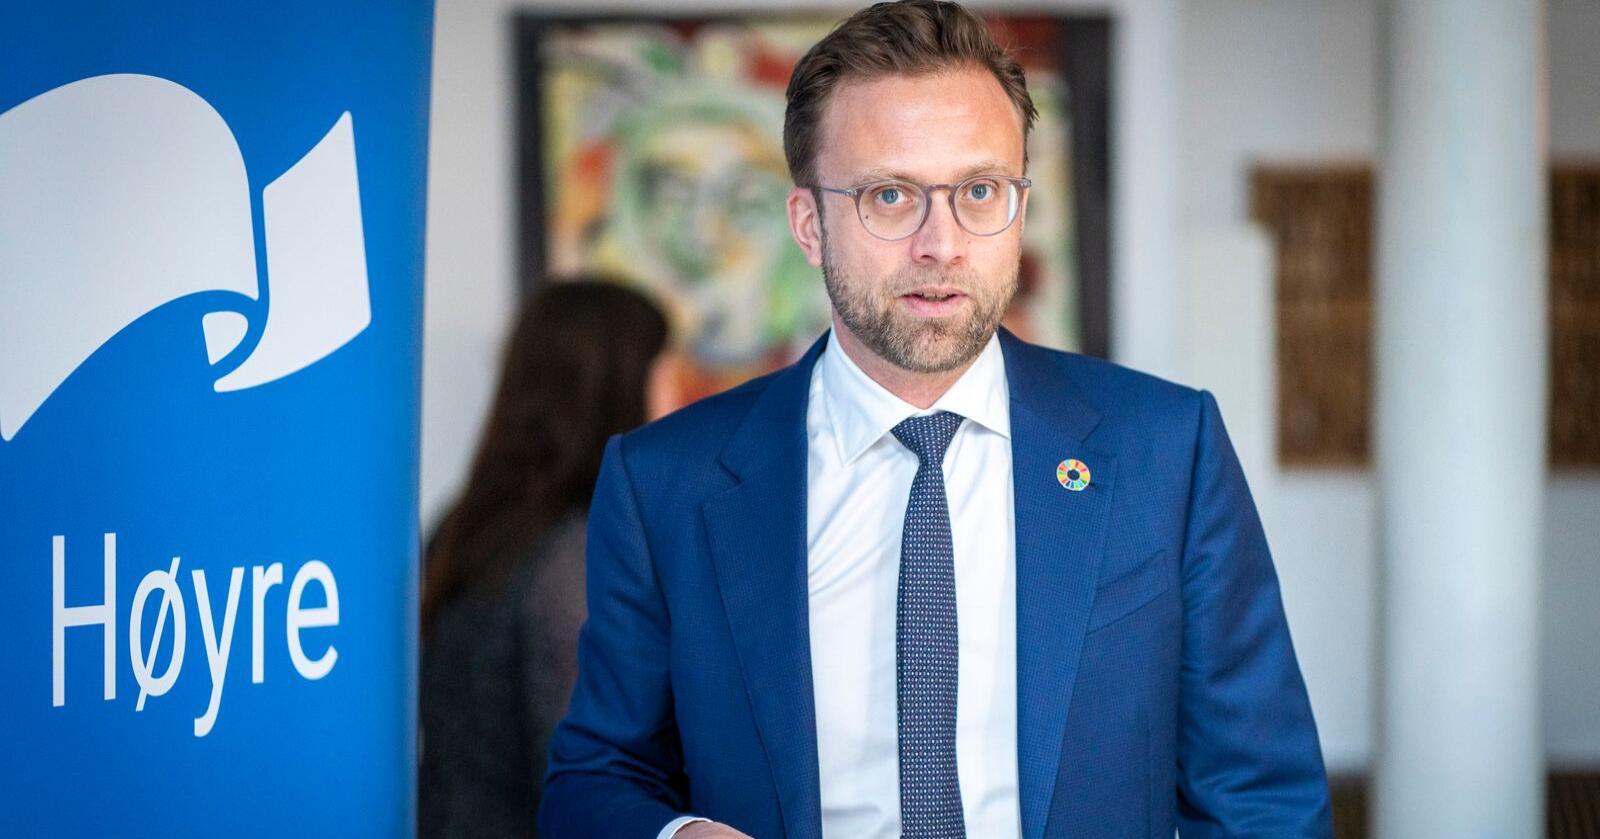 Energipolitisk talsmann: Høyres Nikolai Astrup kan neppe klandres for å drive høyrepolitikk. Foto: Heiko Junge / NTB